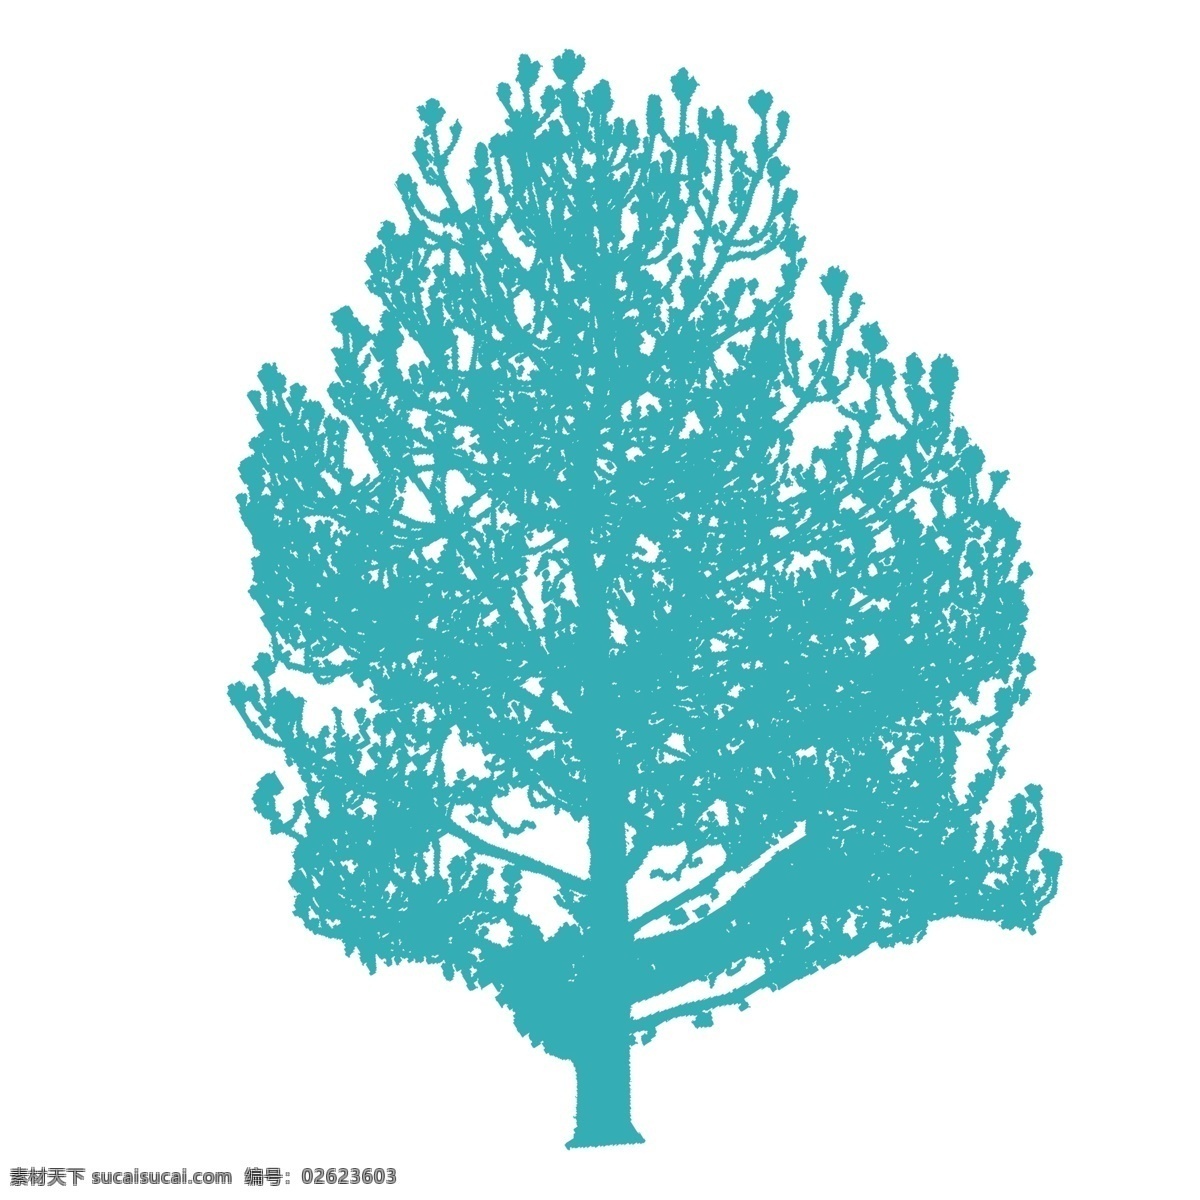 清新 蓝色 树木 装饰 元素 装饰元素 手绘 简约 植物 大树 树叶 草木